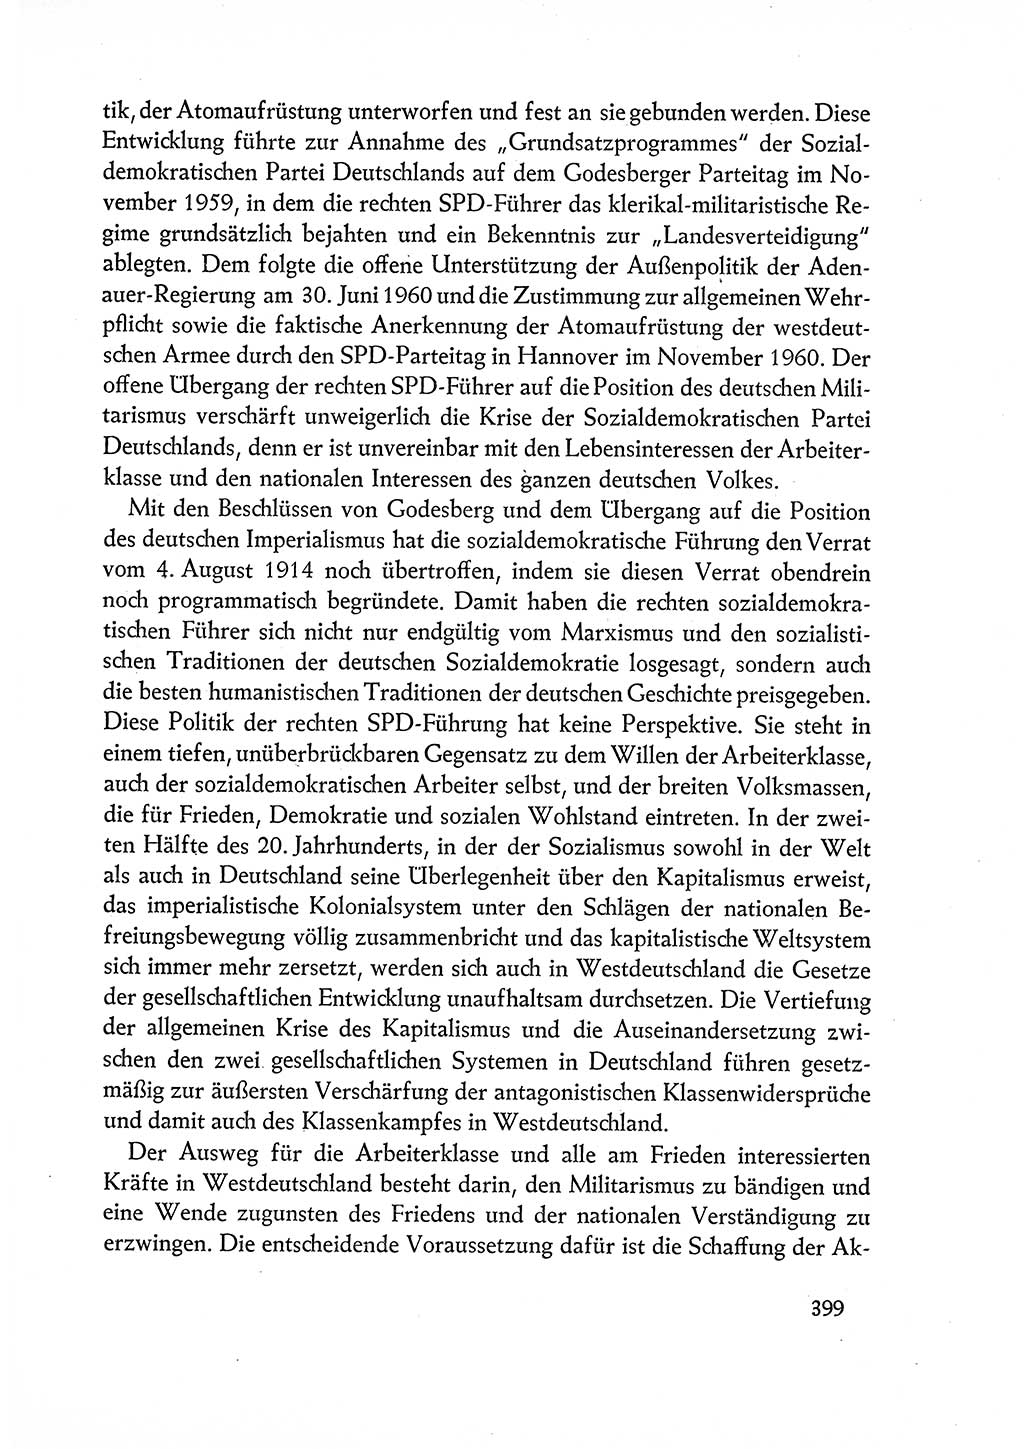 Dokumente der Sozialistischen Einheitspartei Deutschlands (SED) [Deutsche Demokratische Republik (DDR)] 1960-1961, Seite 399 (Dok. SED DDR 1960-1961, S. 399)